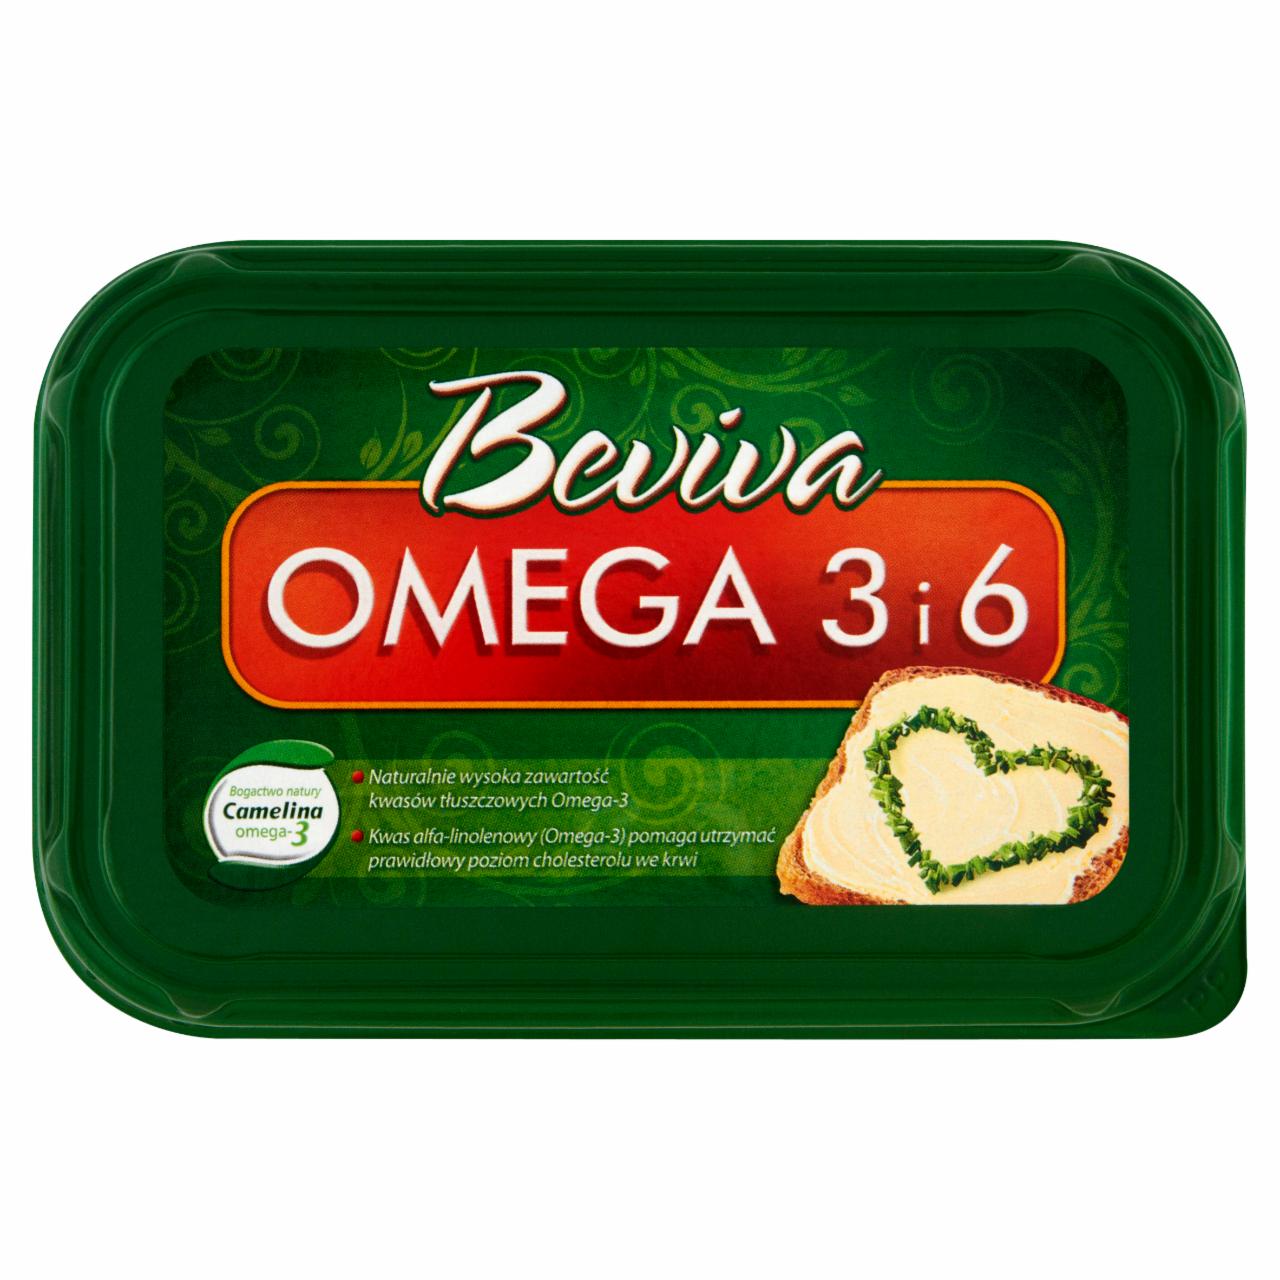 Zdjęcia - Beviva Omega 3 i 6 Tłuszcz do smarowania 400 g